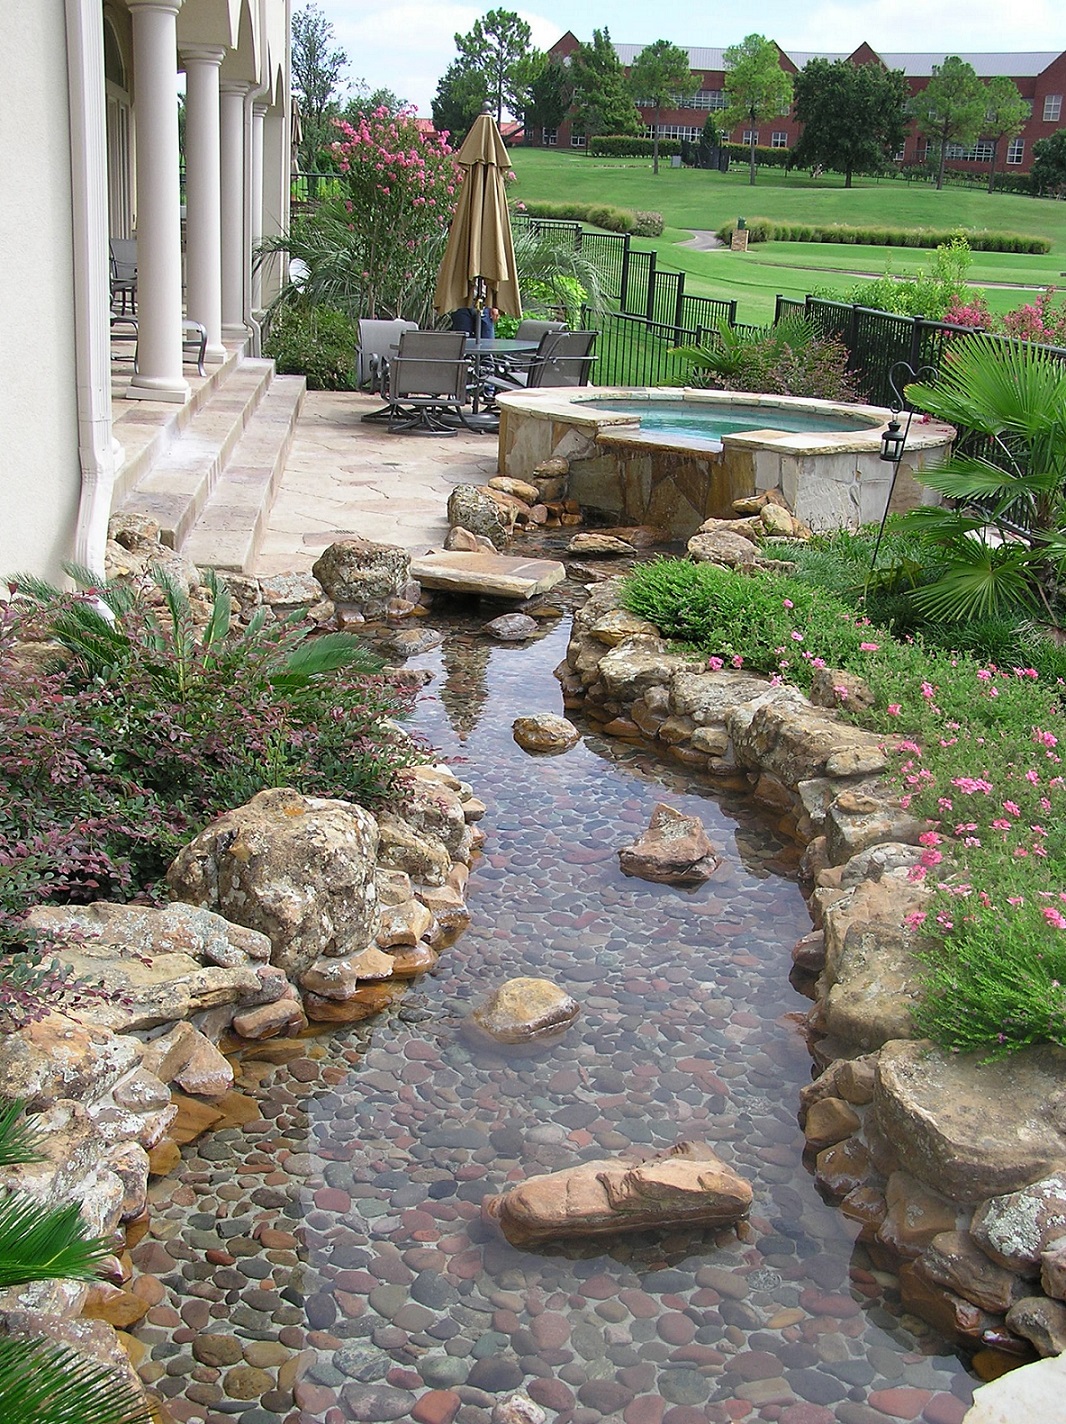  river stone garden designs